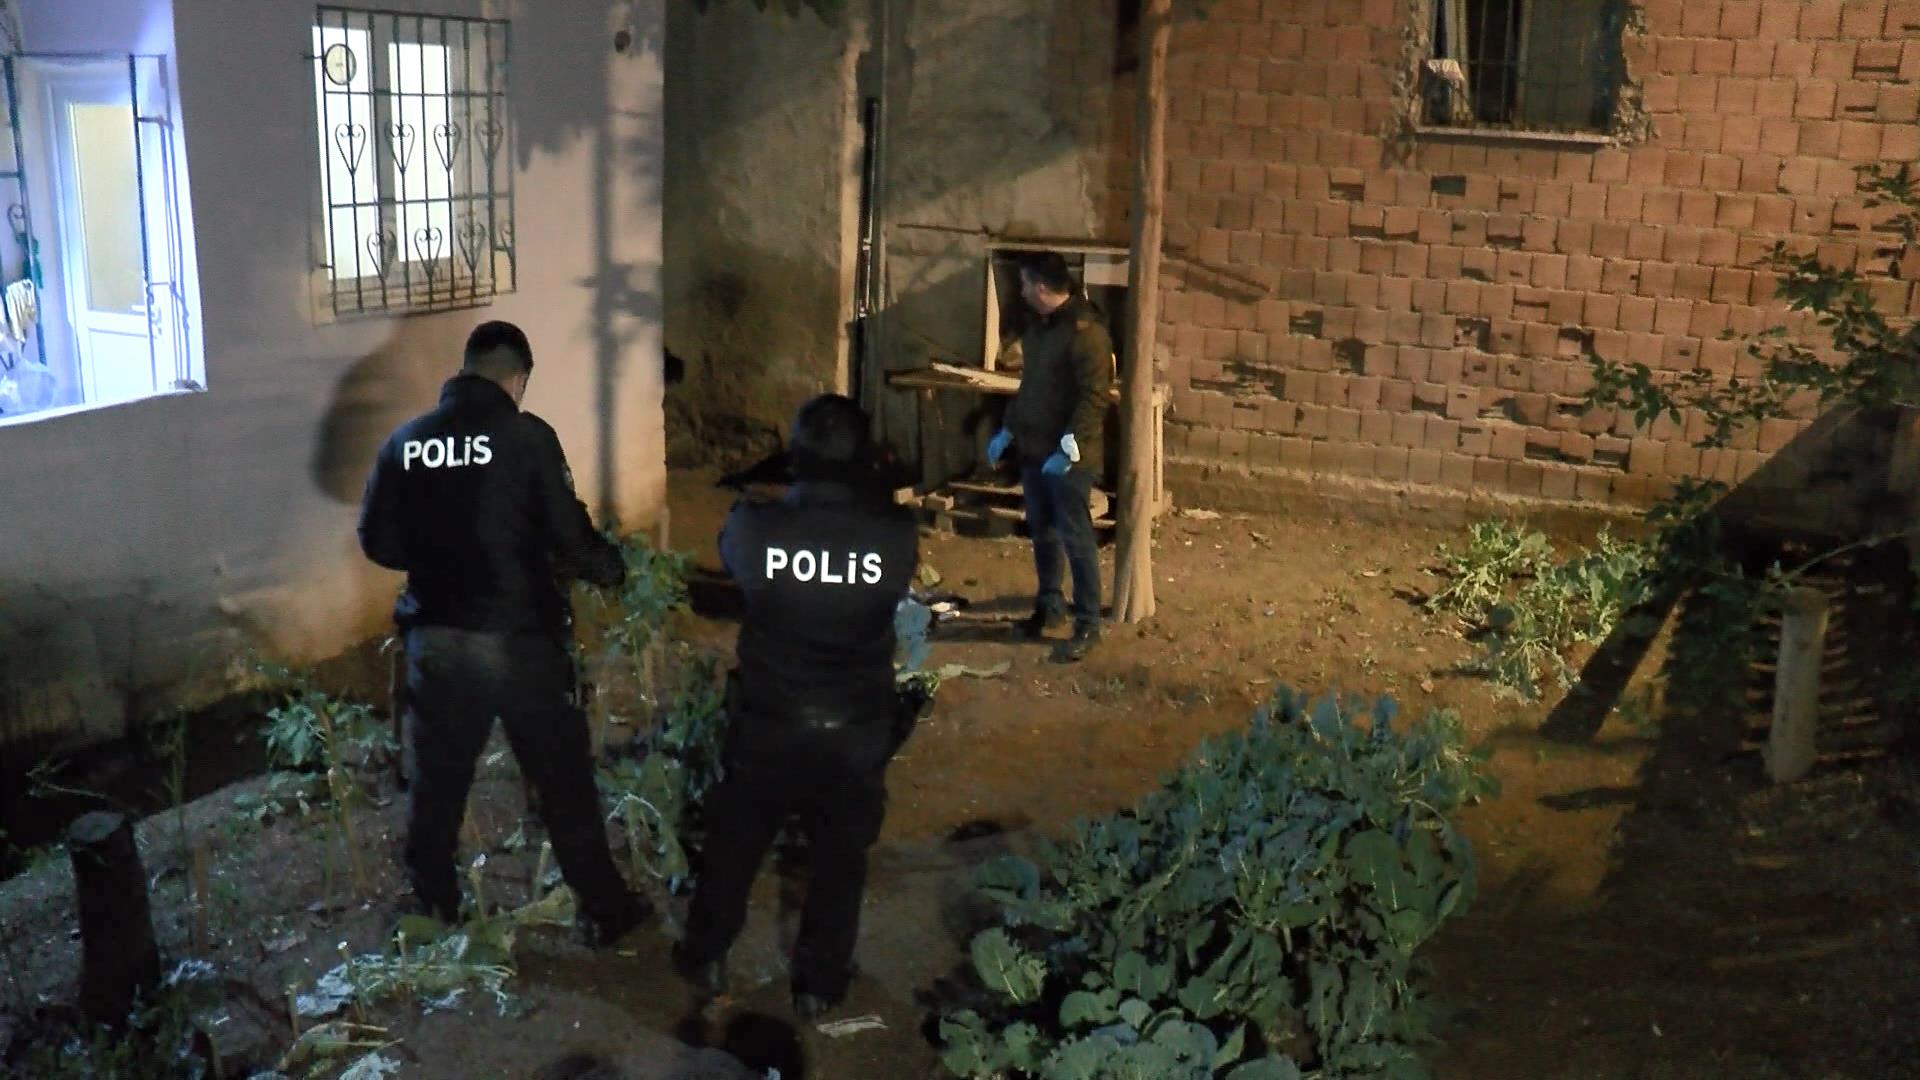 İstanbul'da akşam soğunda bahçeye bırakılan yenidoğan bebek hastaneye kaldırıldı